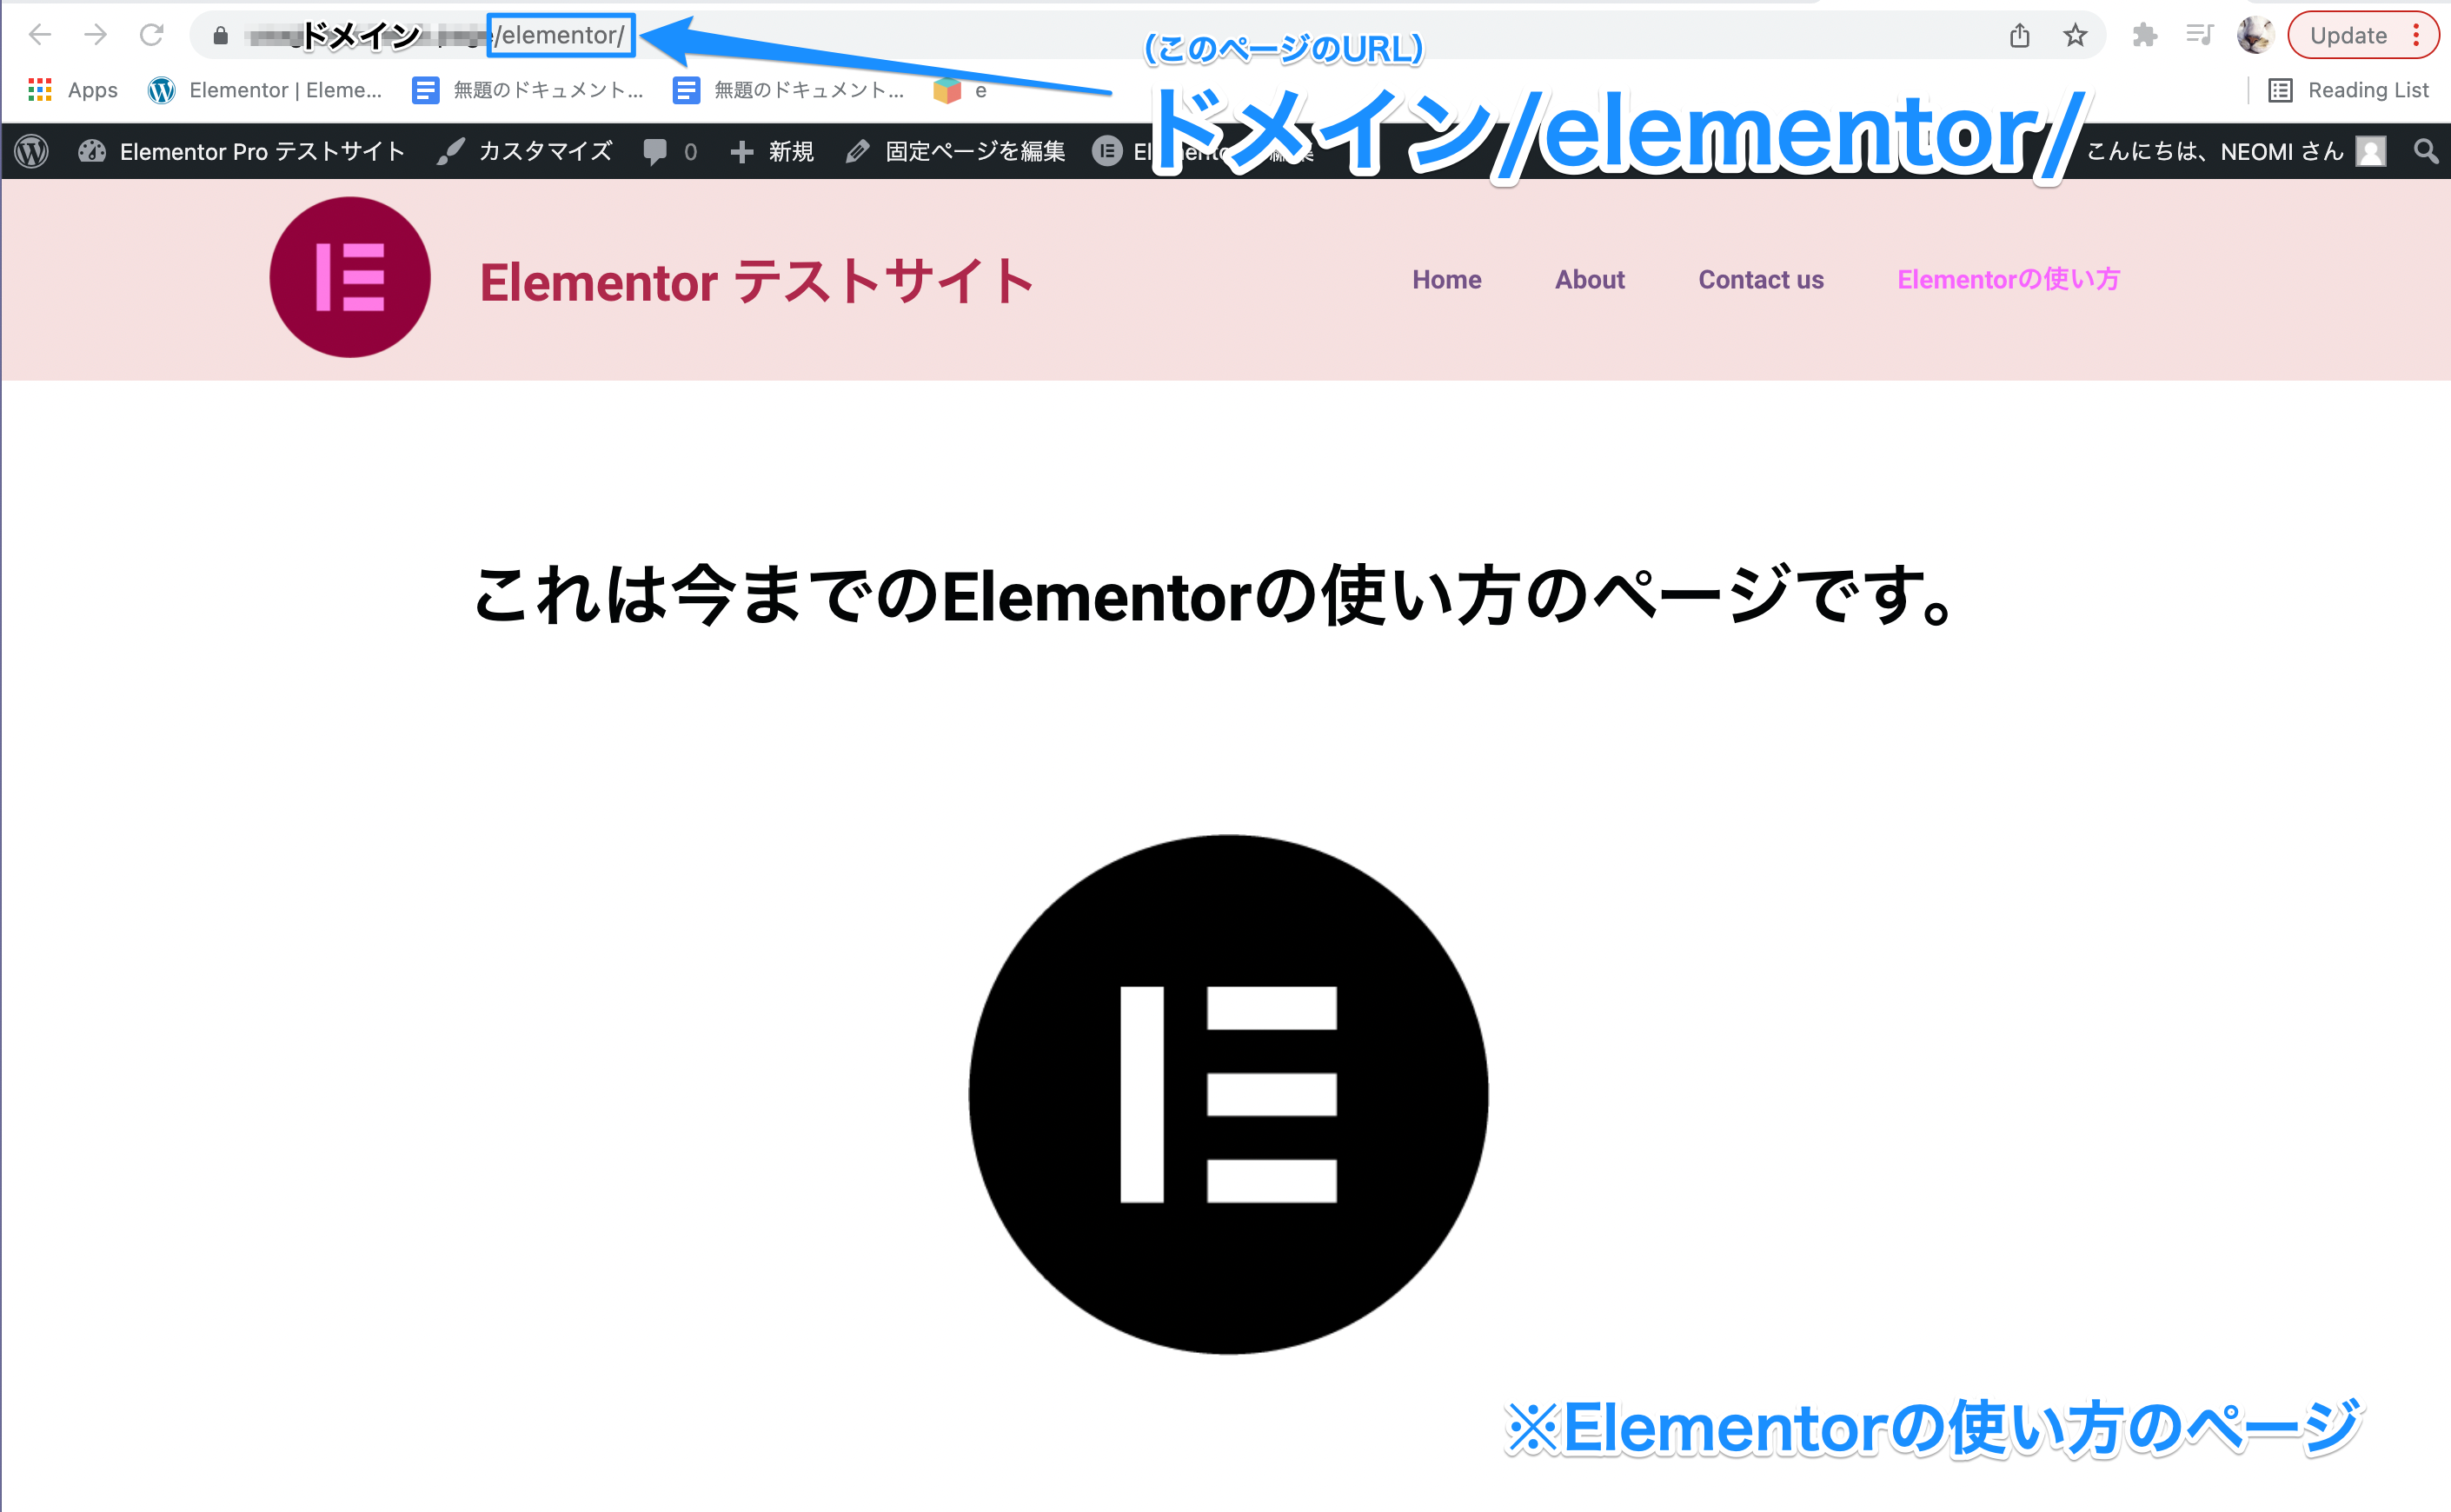 サンプルでリダイレクト元となる『Elementorの使い方』の固定ページの表示画面とページURL